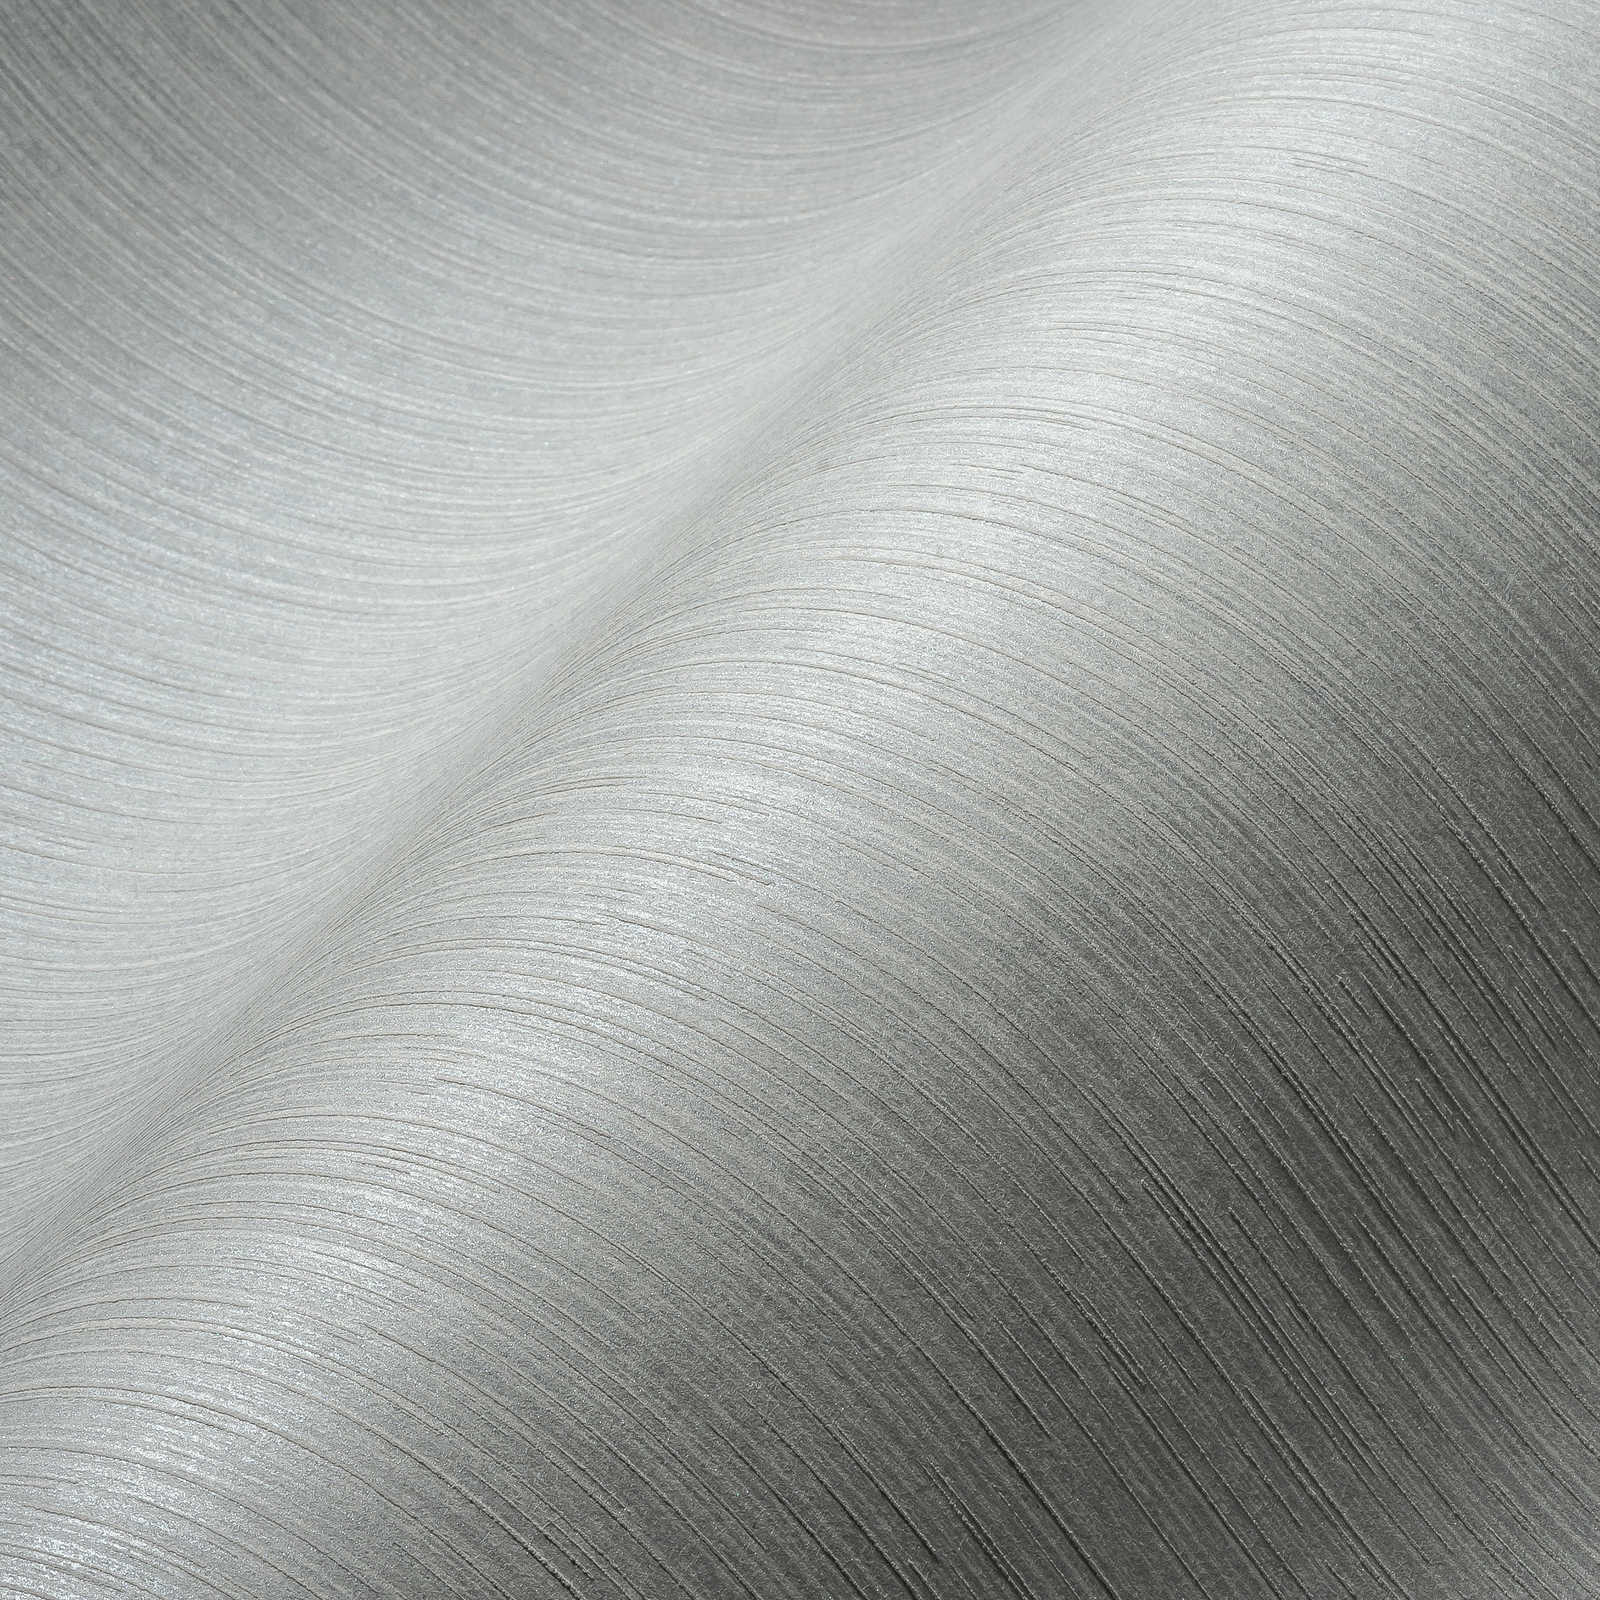             Papier peint ligné gris argenté avec effet brillant - gris
        